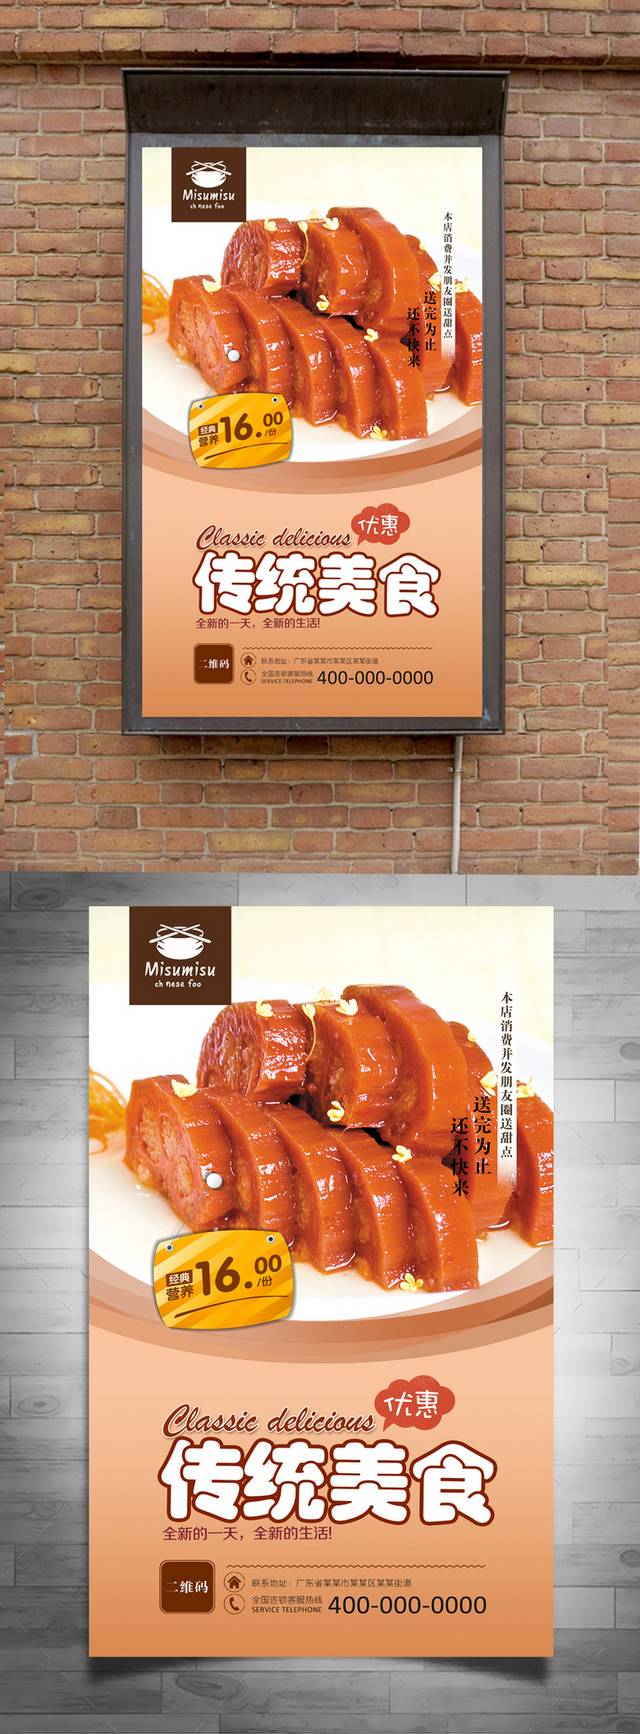 高清糯米藕宣传海报设计psd